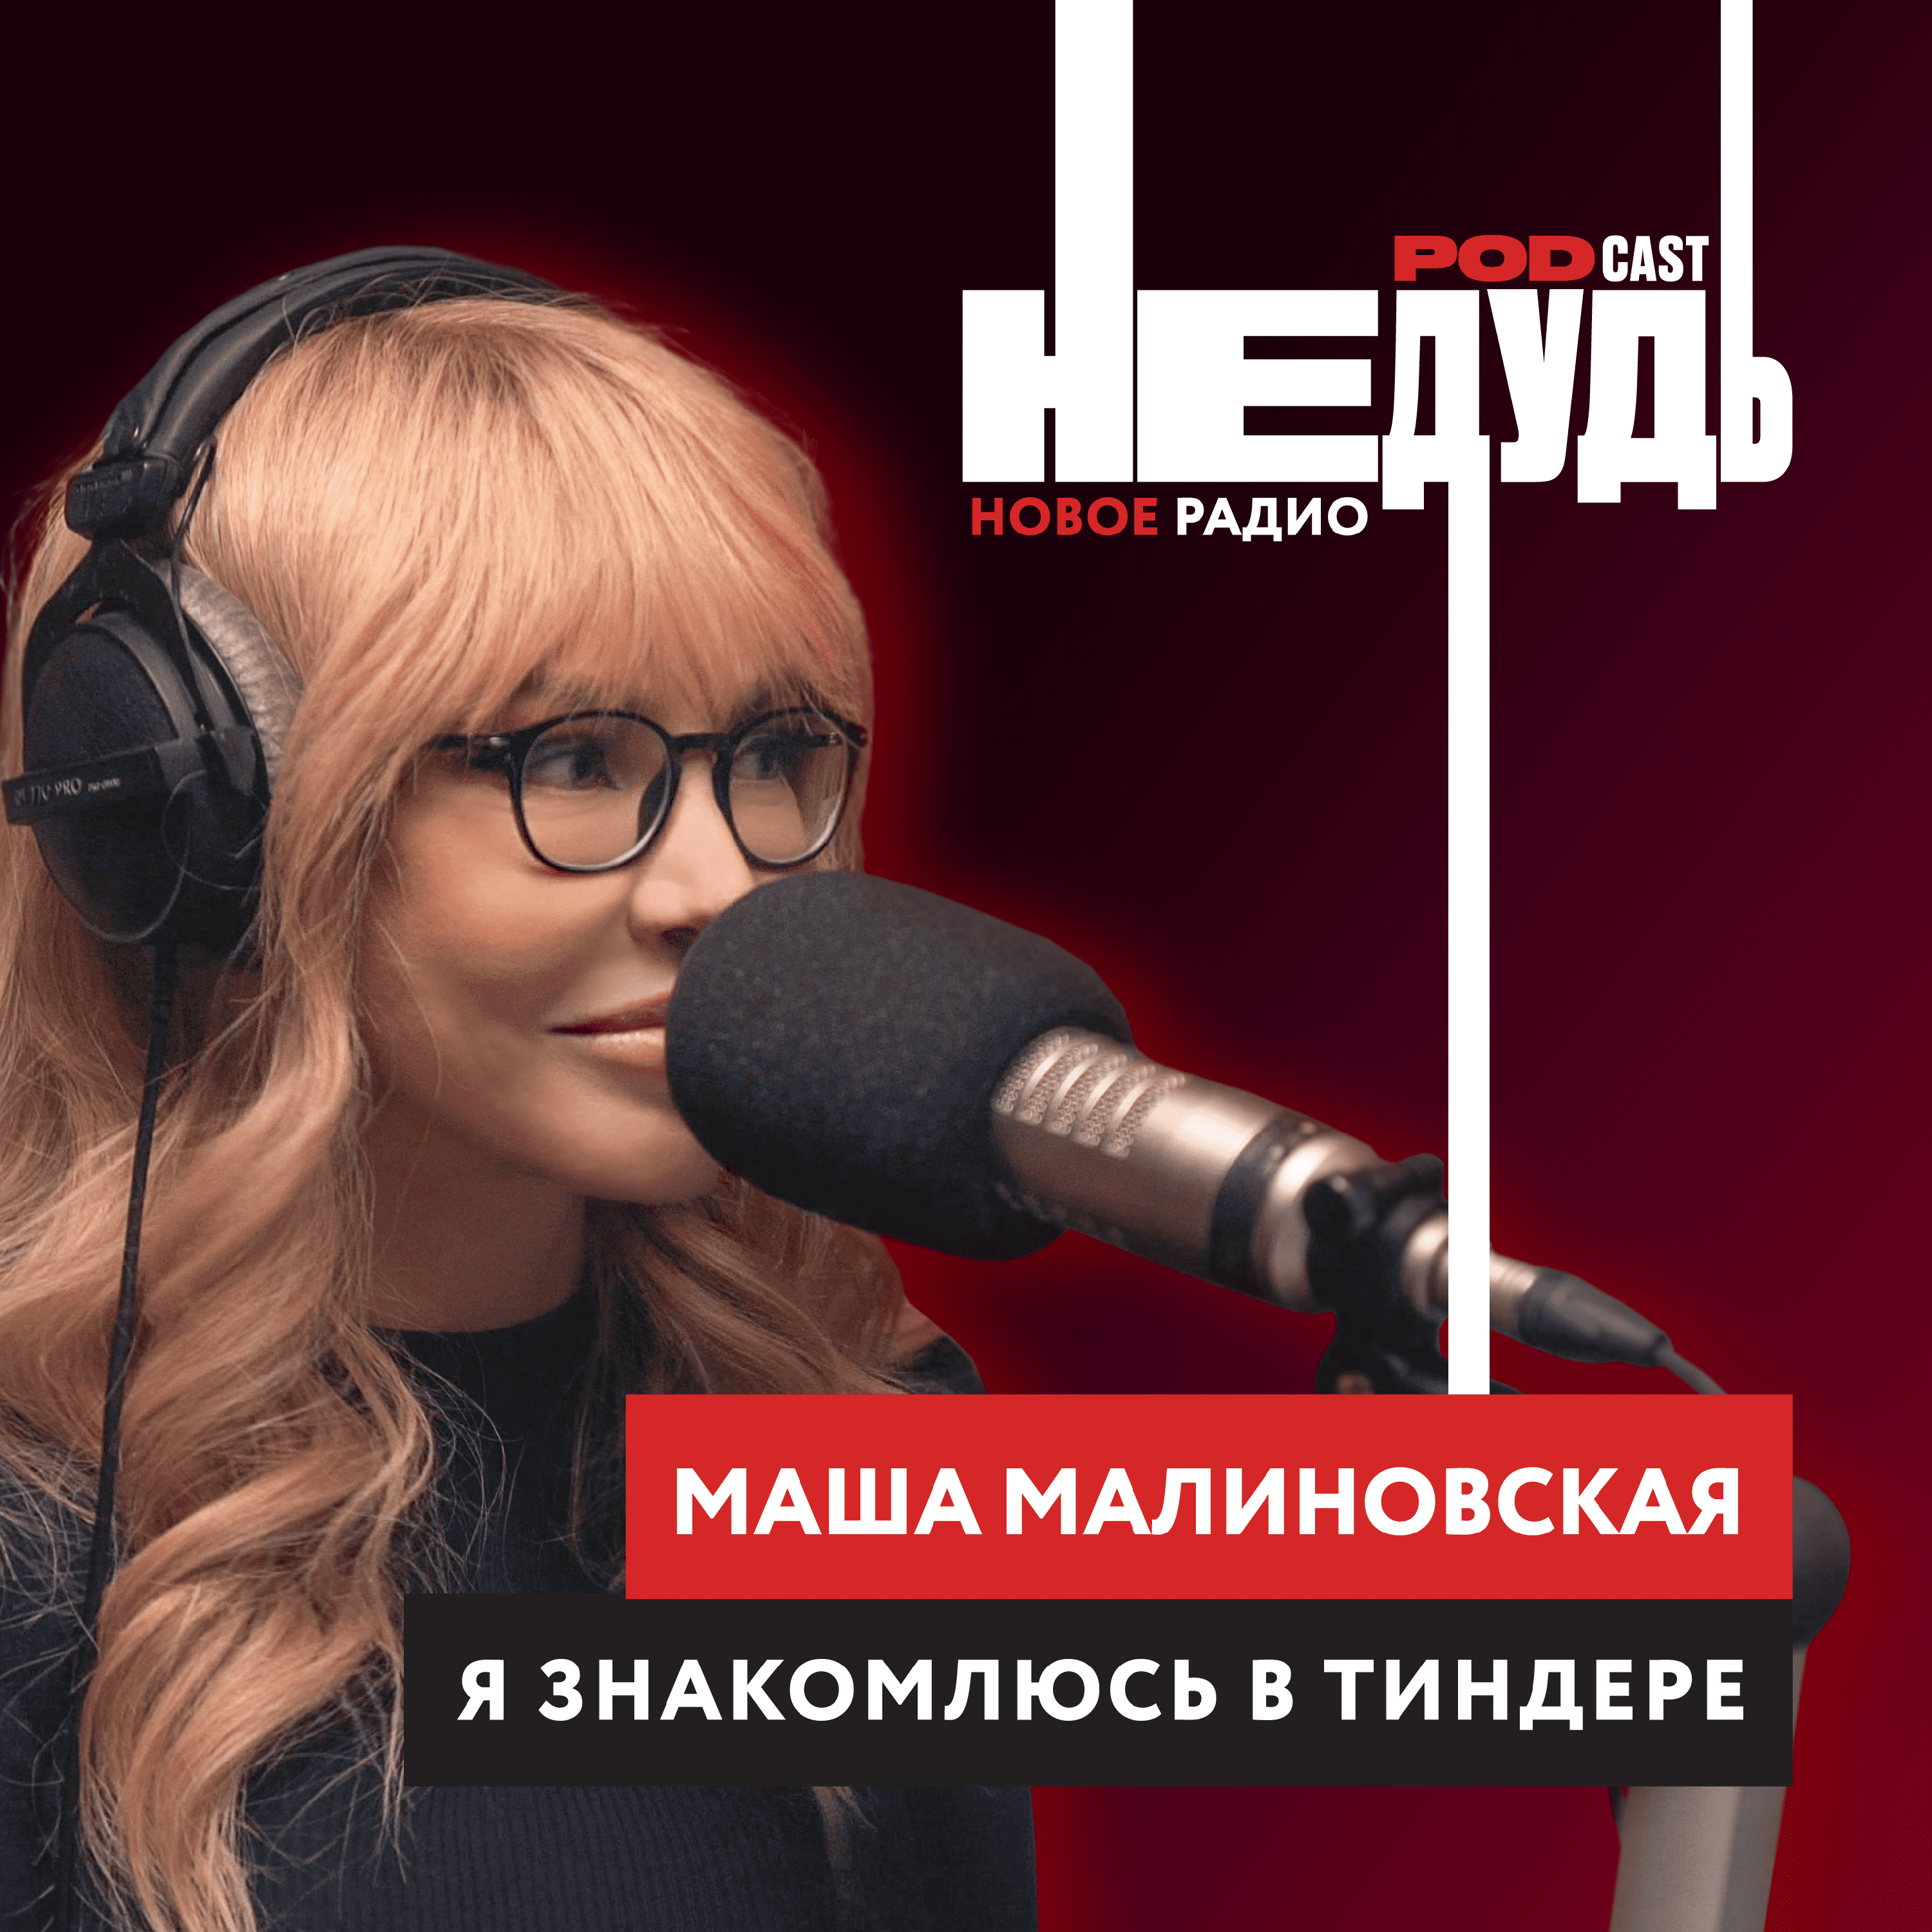 Маша Малиновская: о патриотизме, мужчинах из Tinder, тупости и пластических операциях